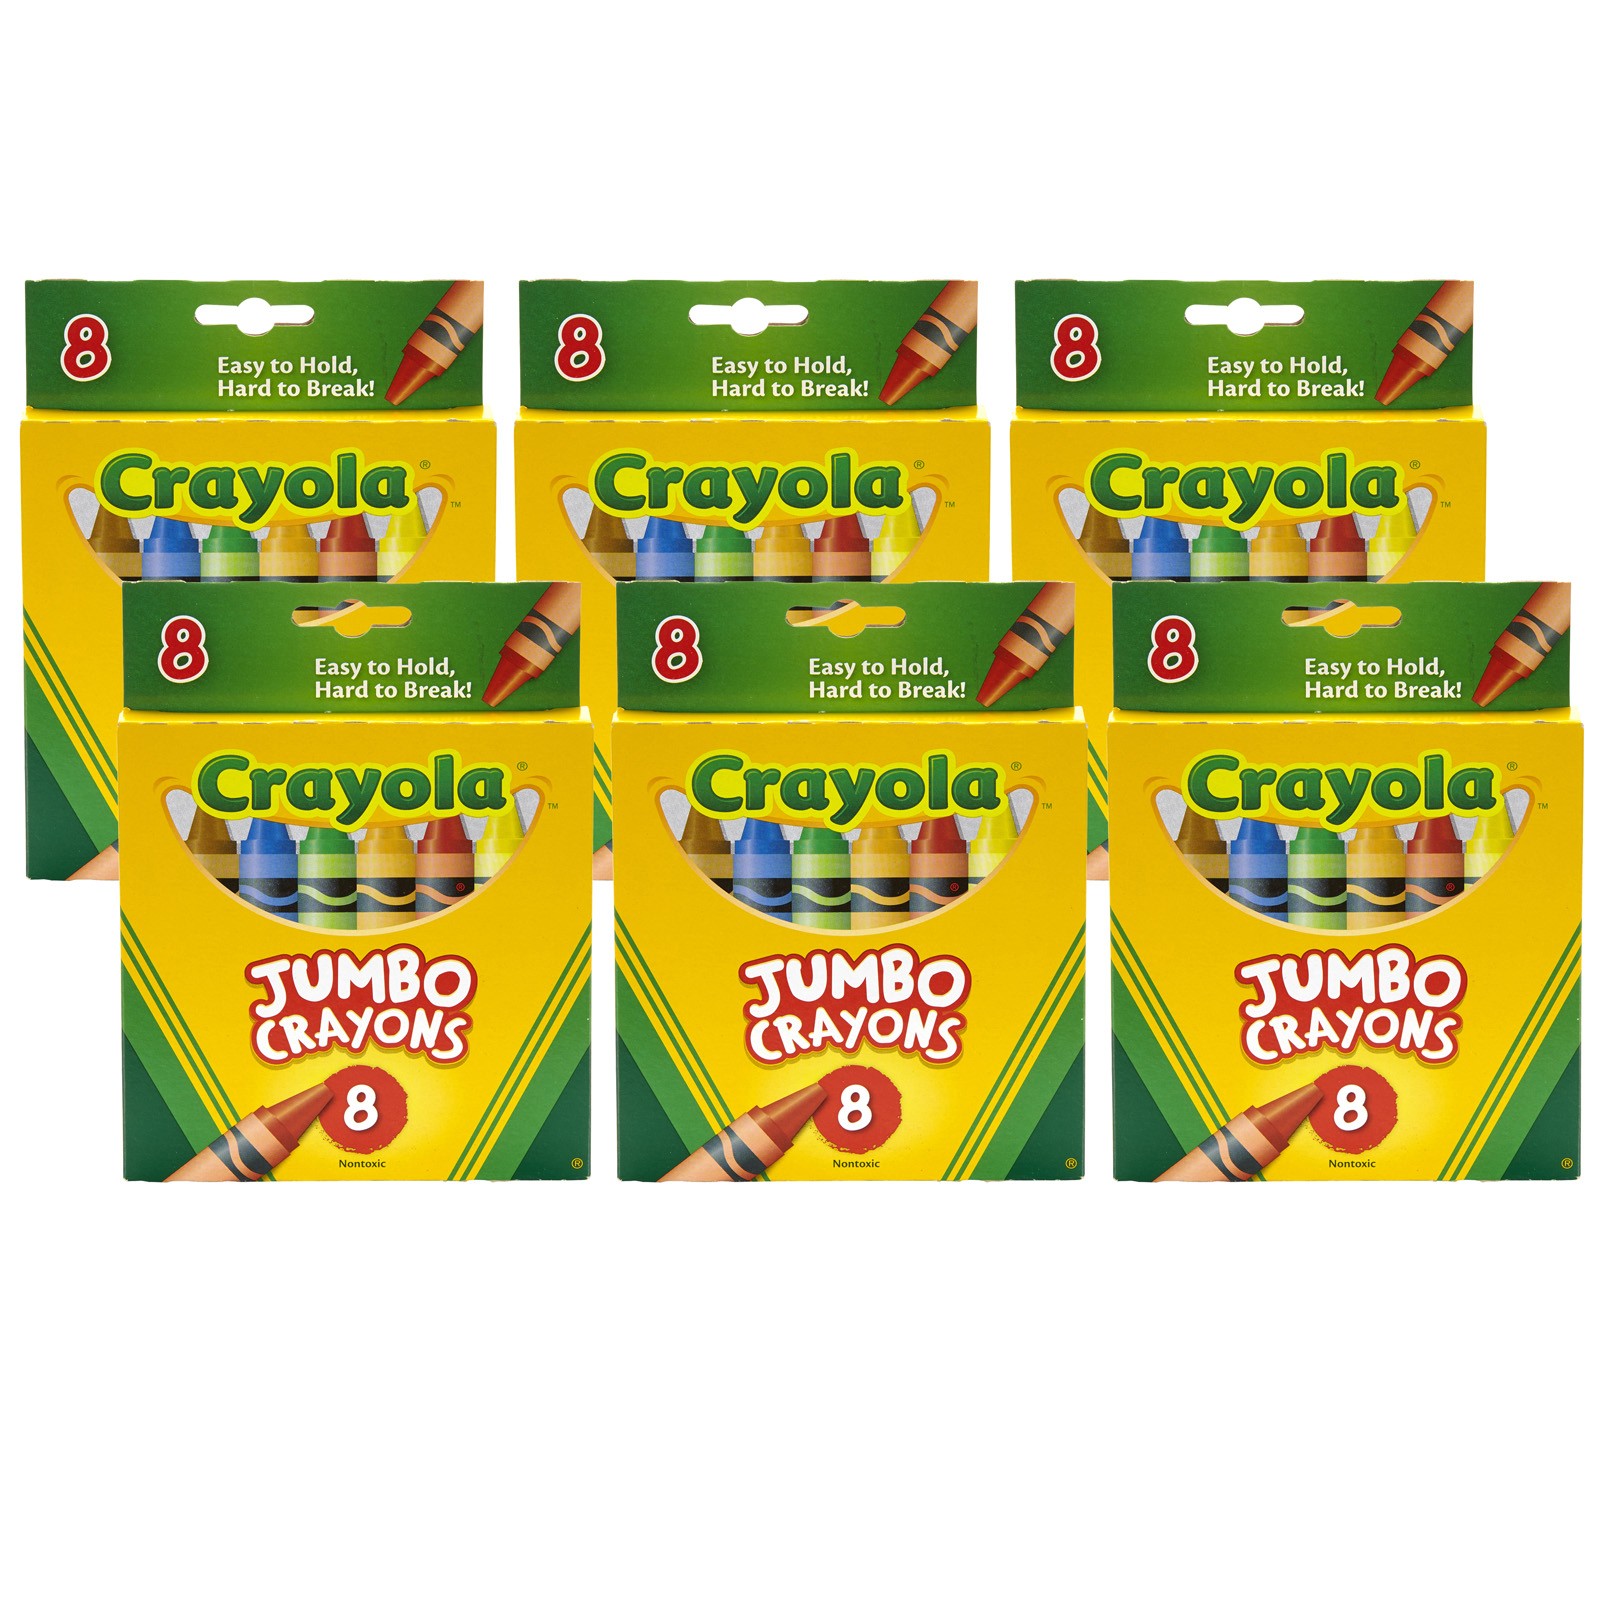 Jumbo Crayons, 8 Per Box, 6 Boxes